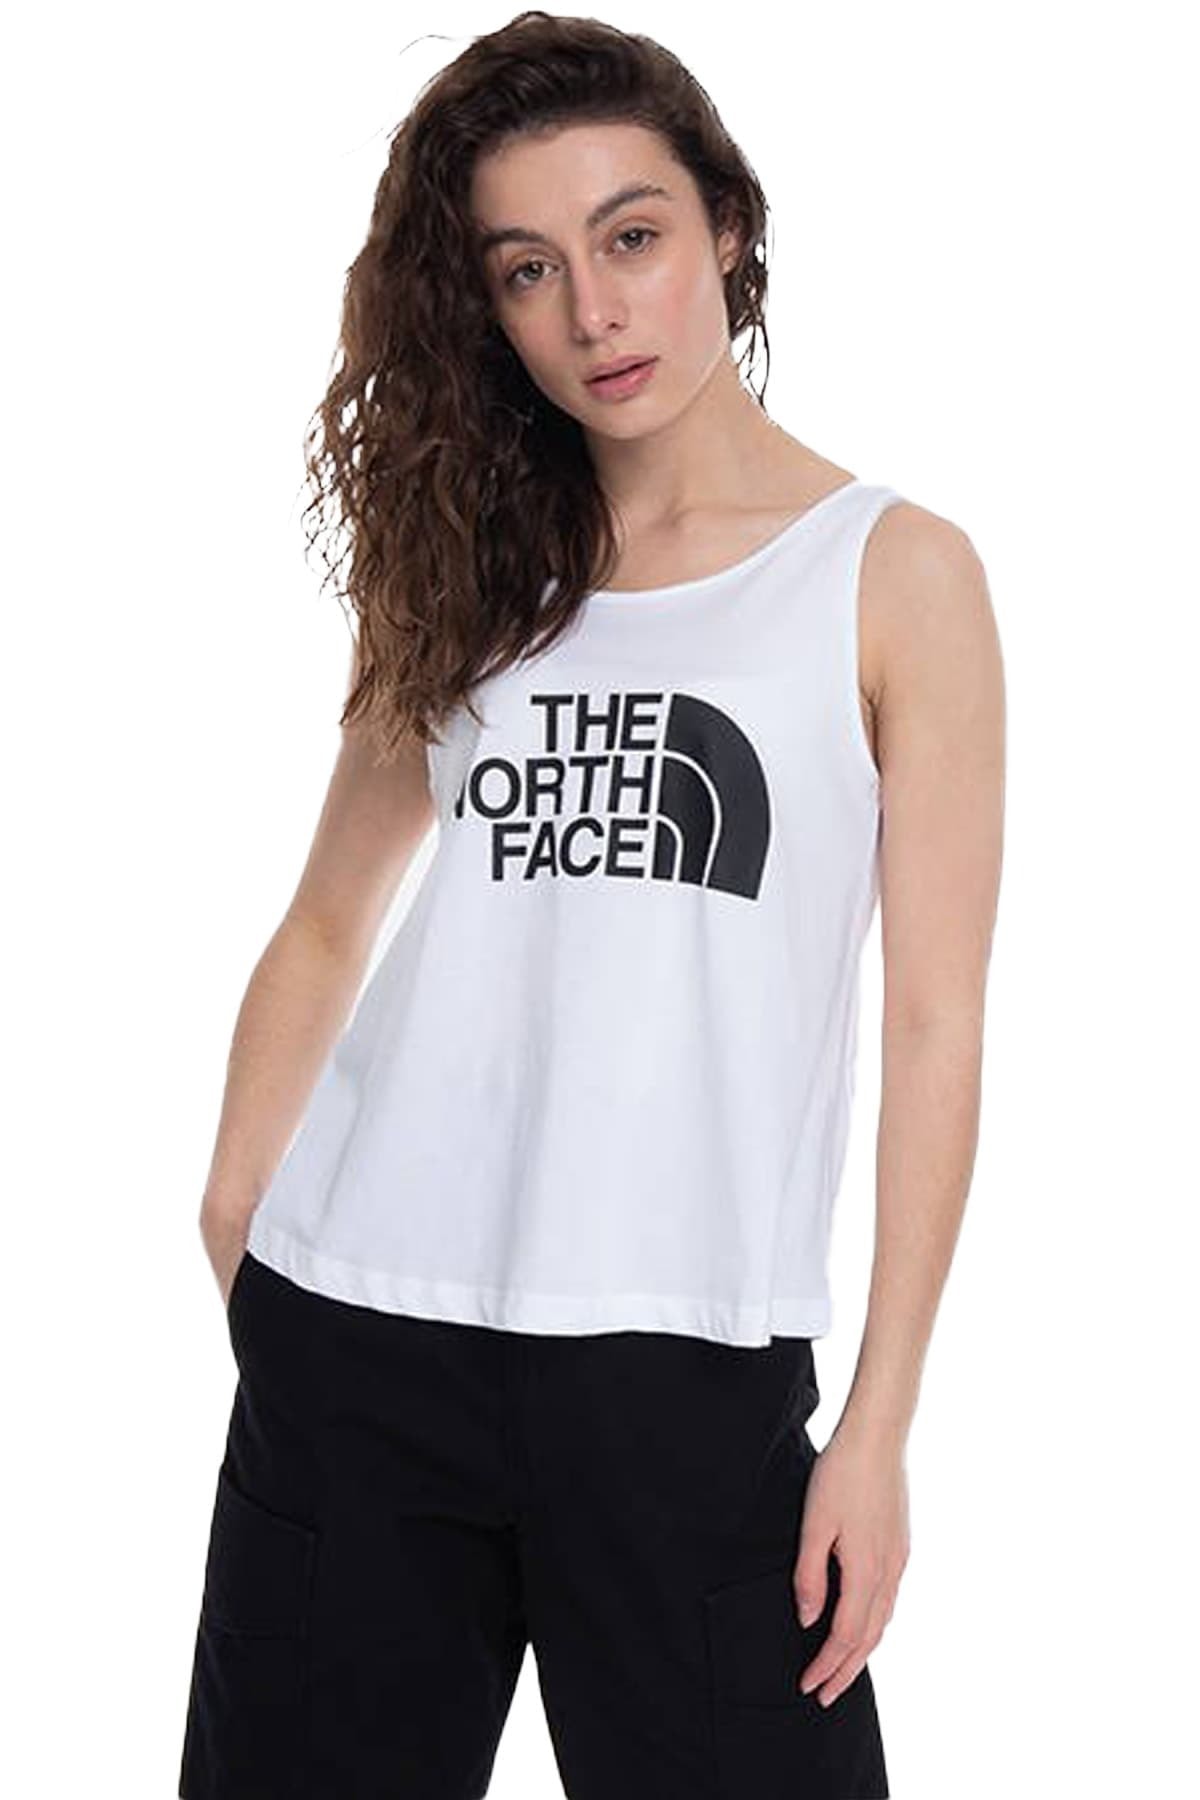 THE NORTH FACE Easy Tank Kadın T-shirt - Nf0a4sye